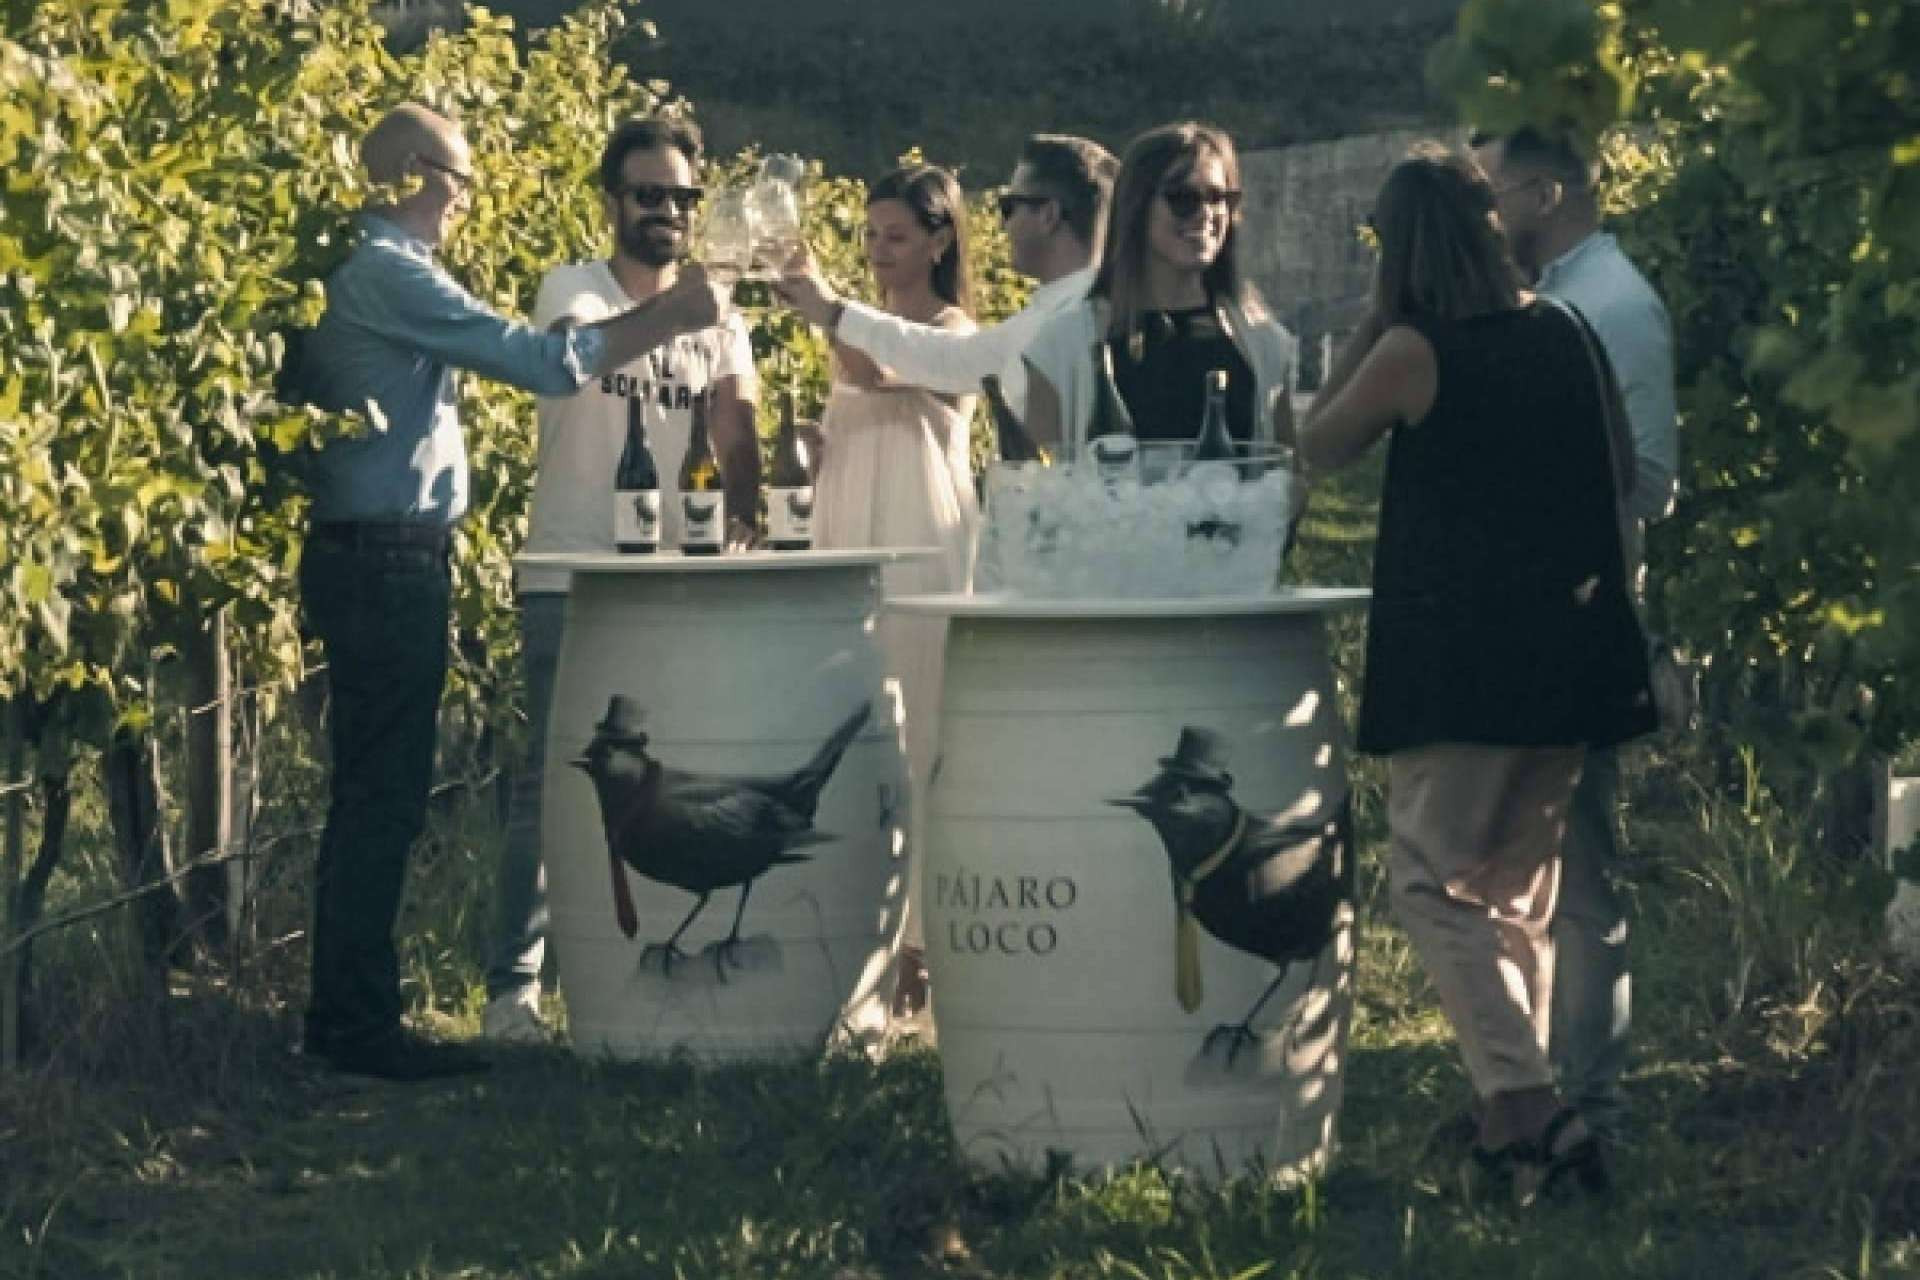  Privios, una marca vitivinícola exclusiva en la producción de vinos blancos y tintos 